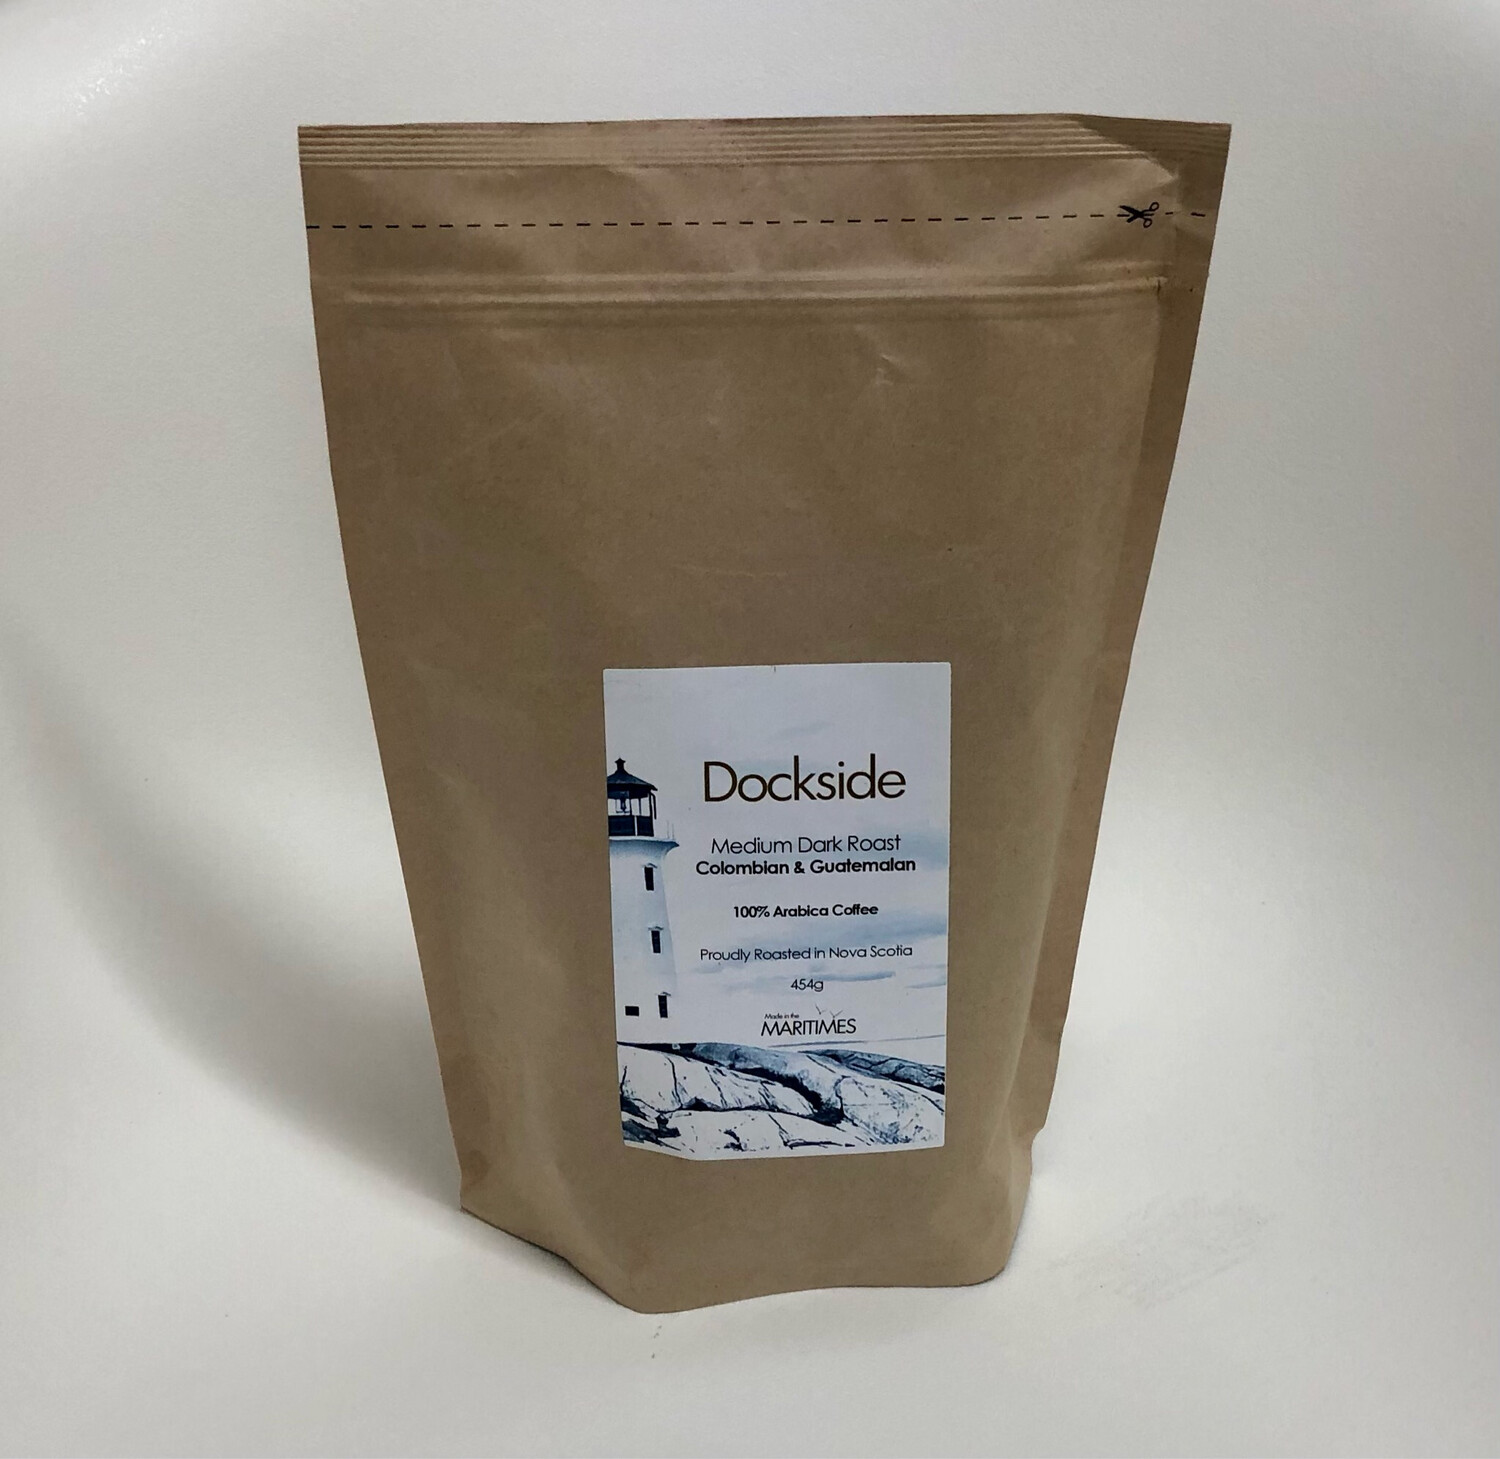 Dockside Medium Dark Roast Coffee